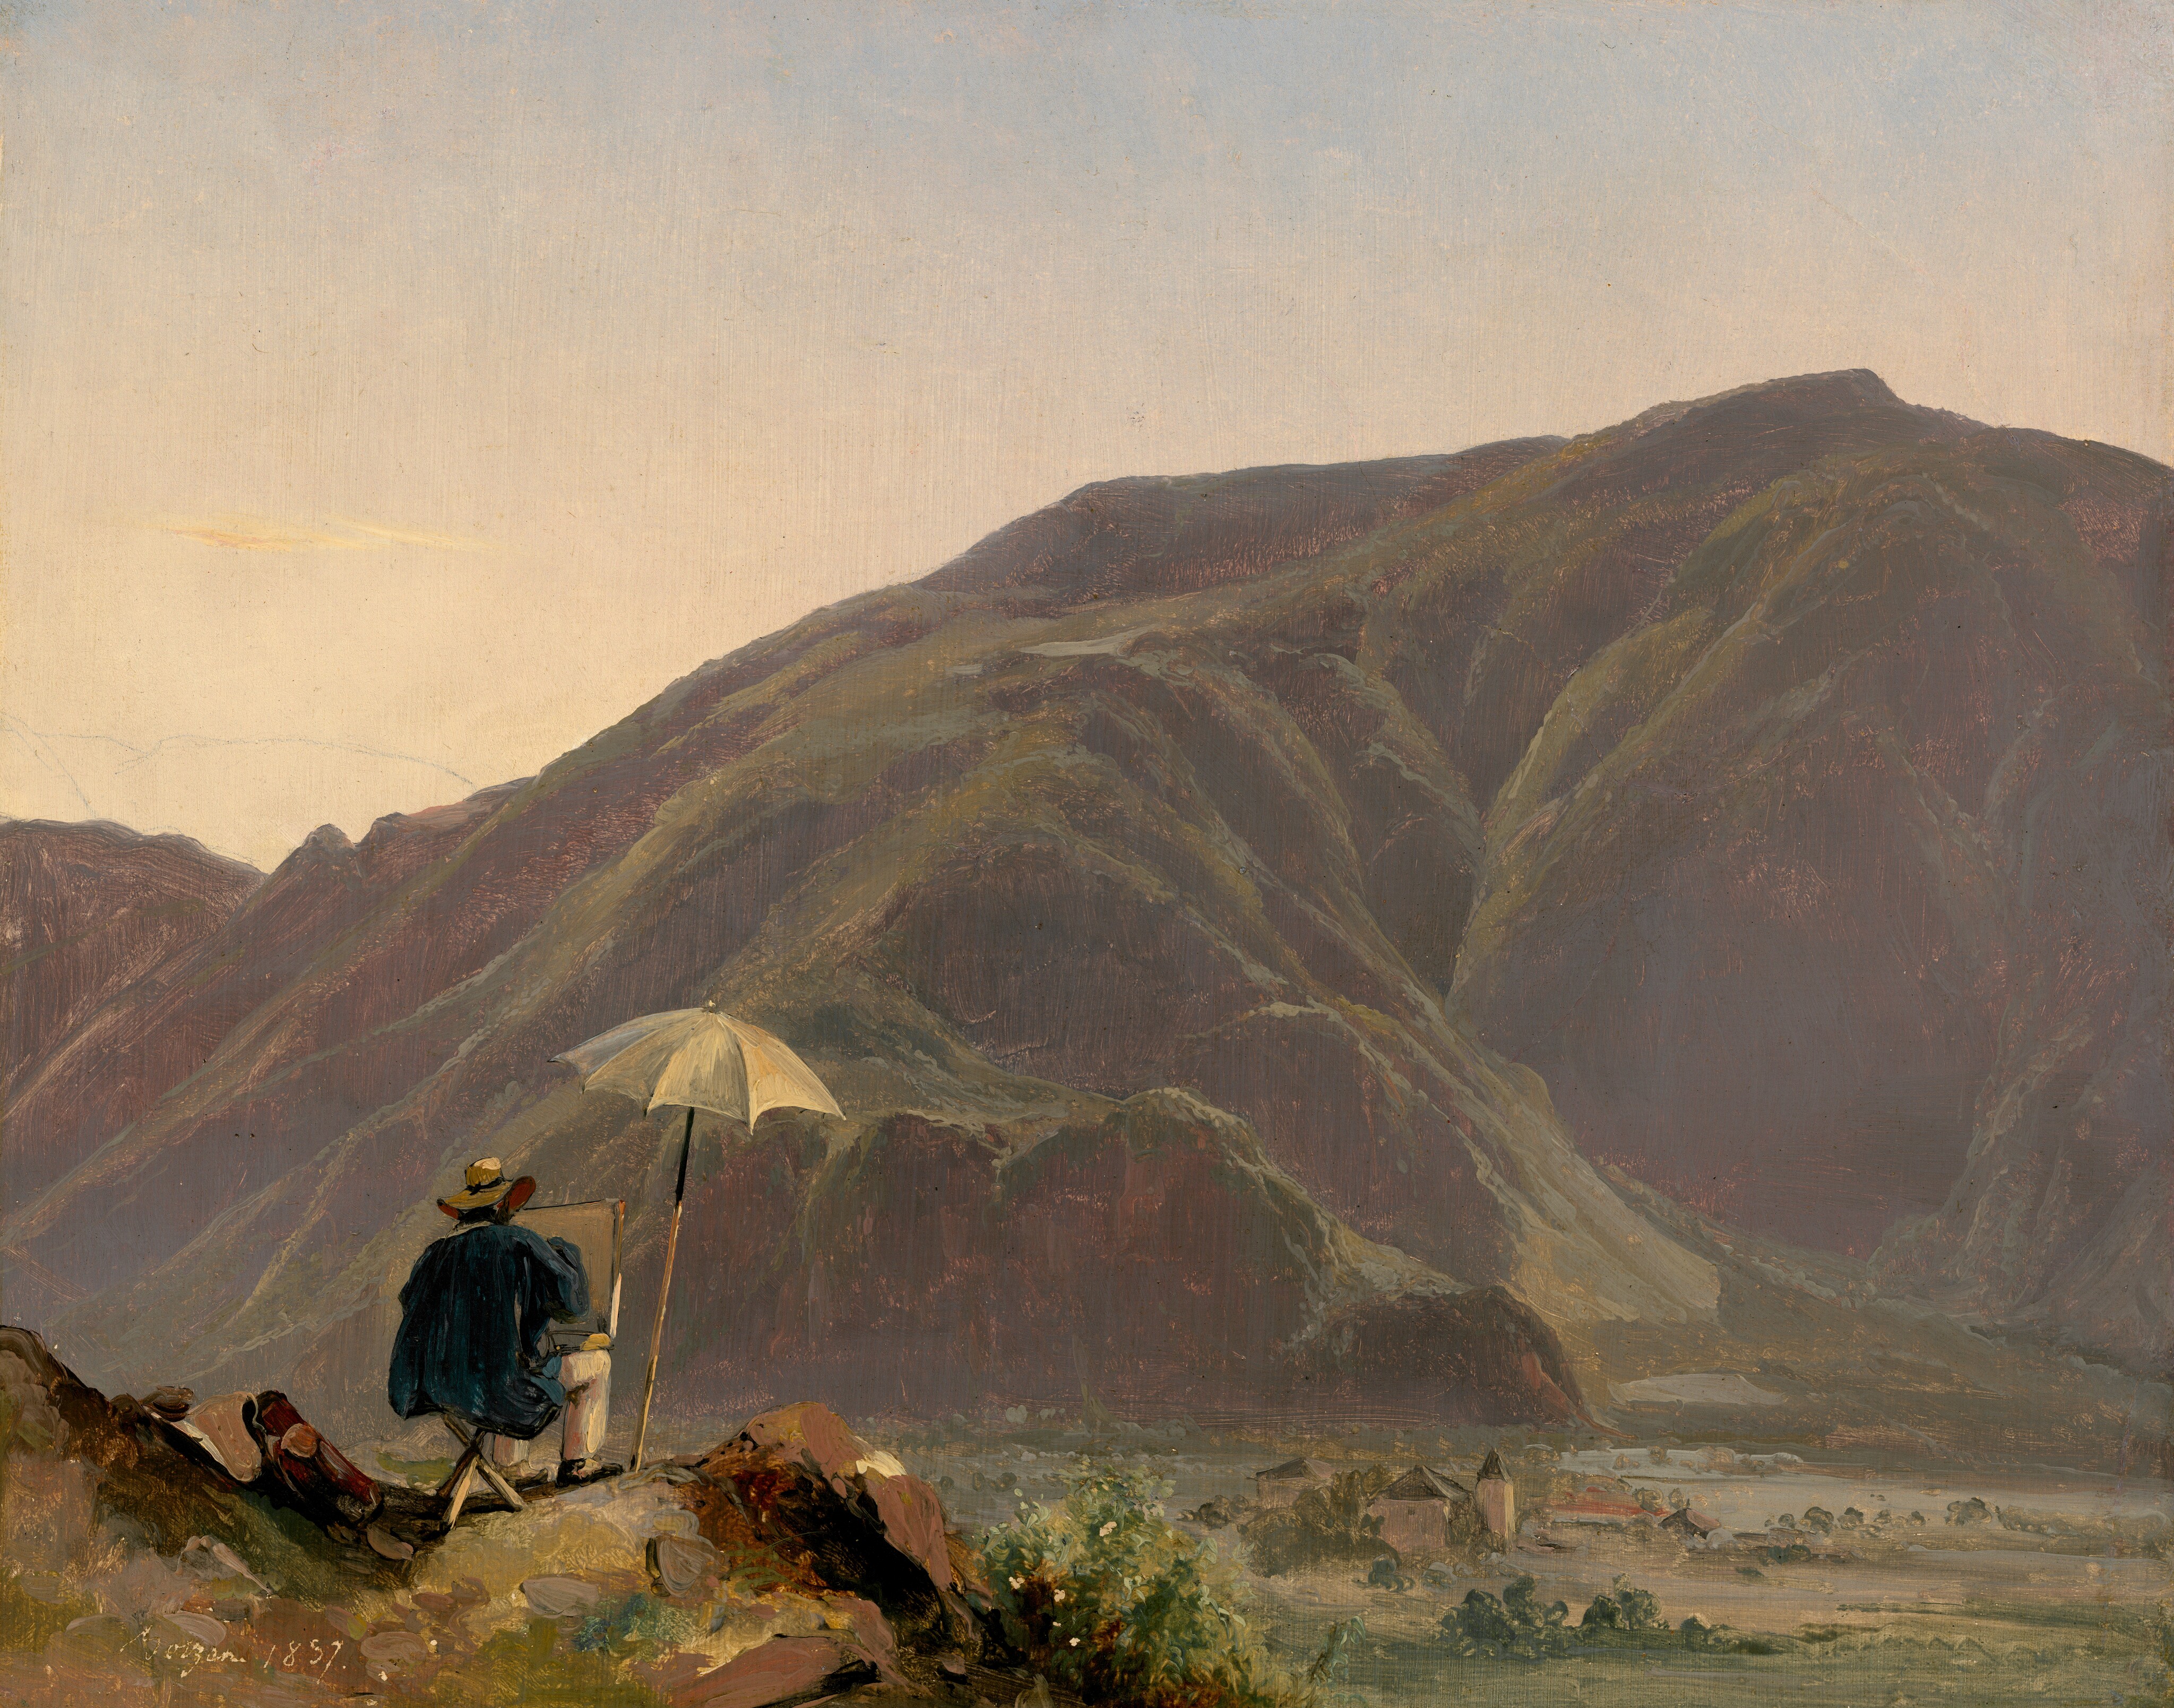 Vista de Bolzano con un pintor by Jules Coignet - 1837 - 31 x 39 cm National Gallery of Art